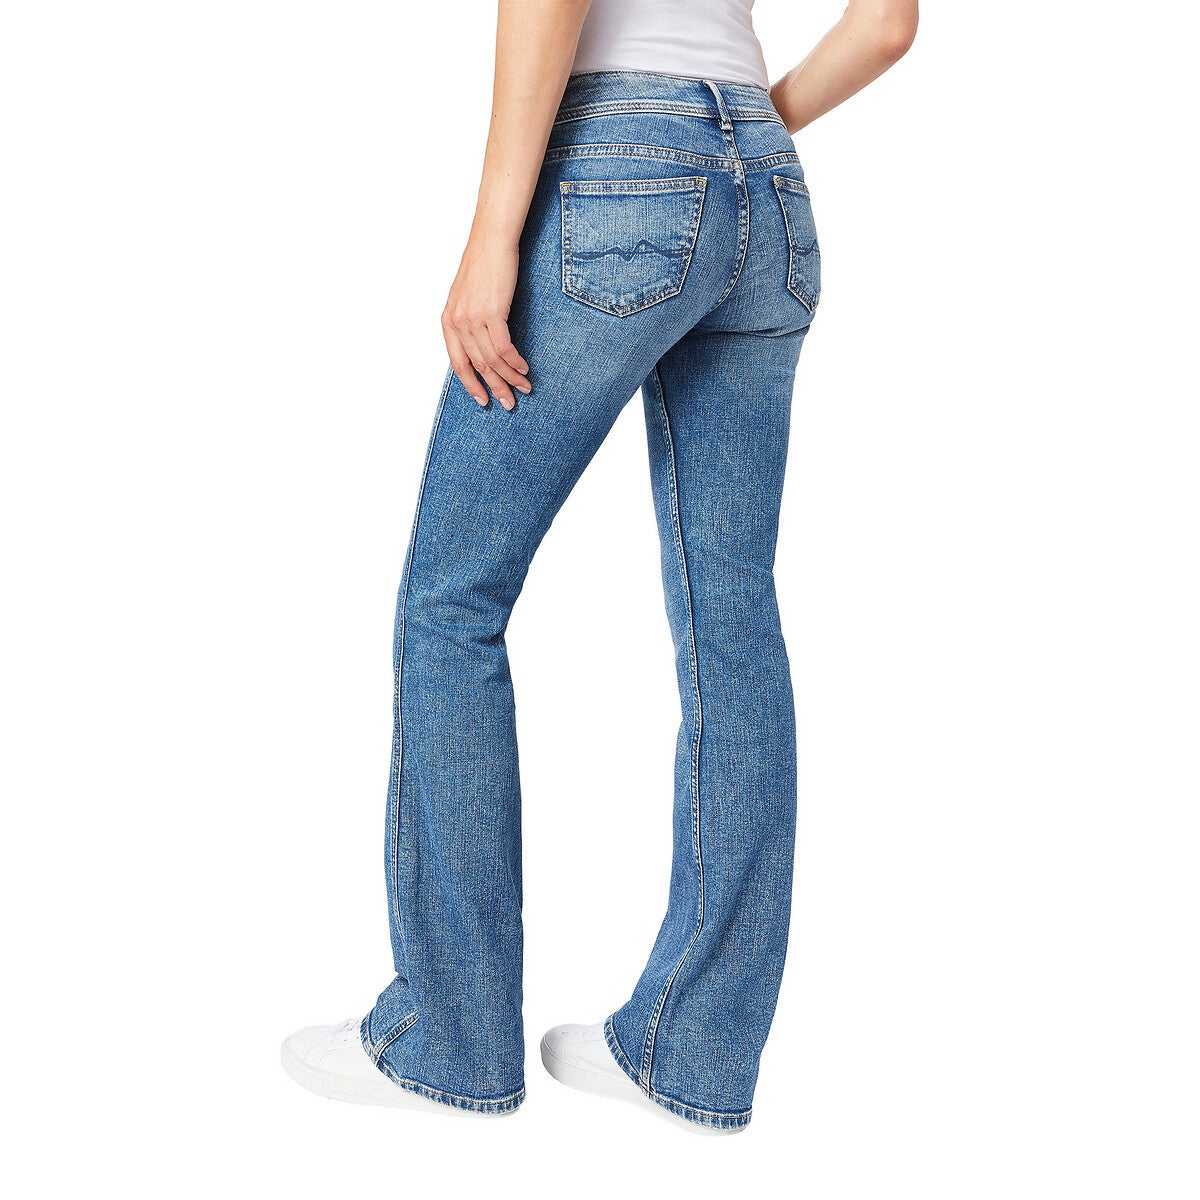 Джинсы буткат - модель джинсов, история создания, особенности кроя | джинсы bootcut - фото и бренды